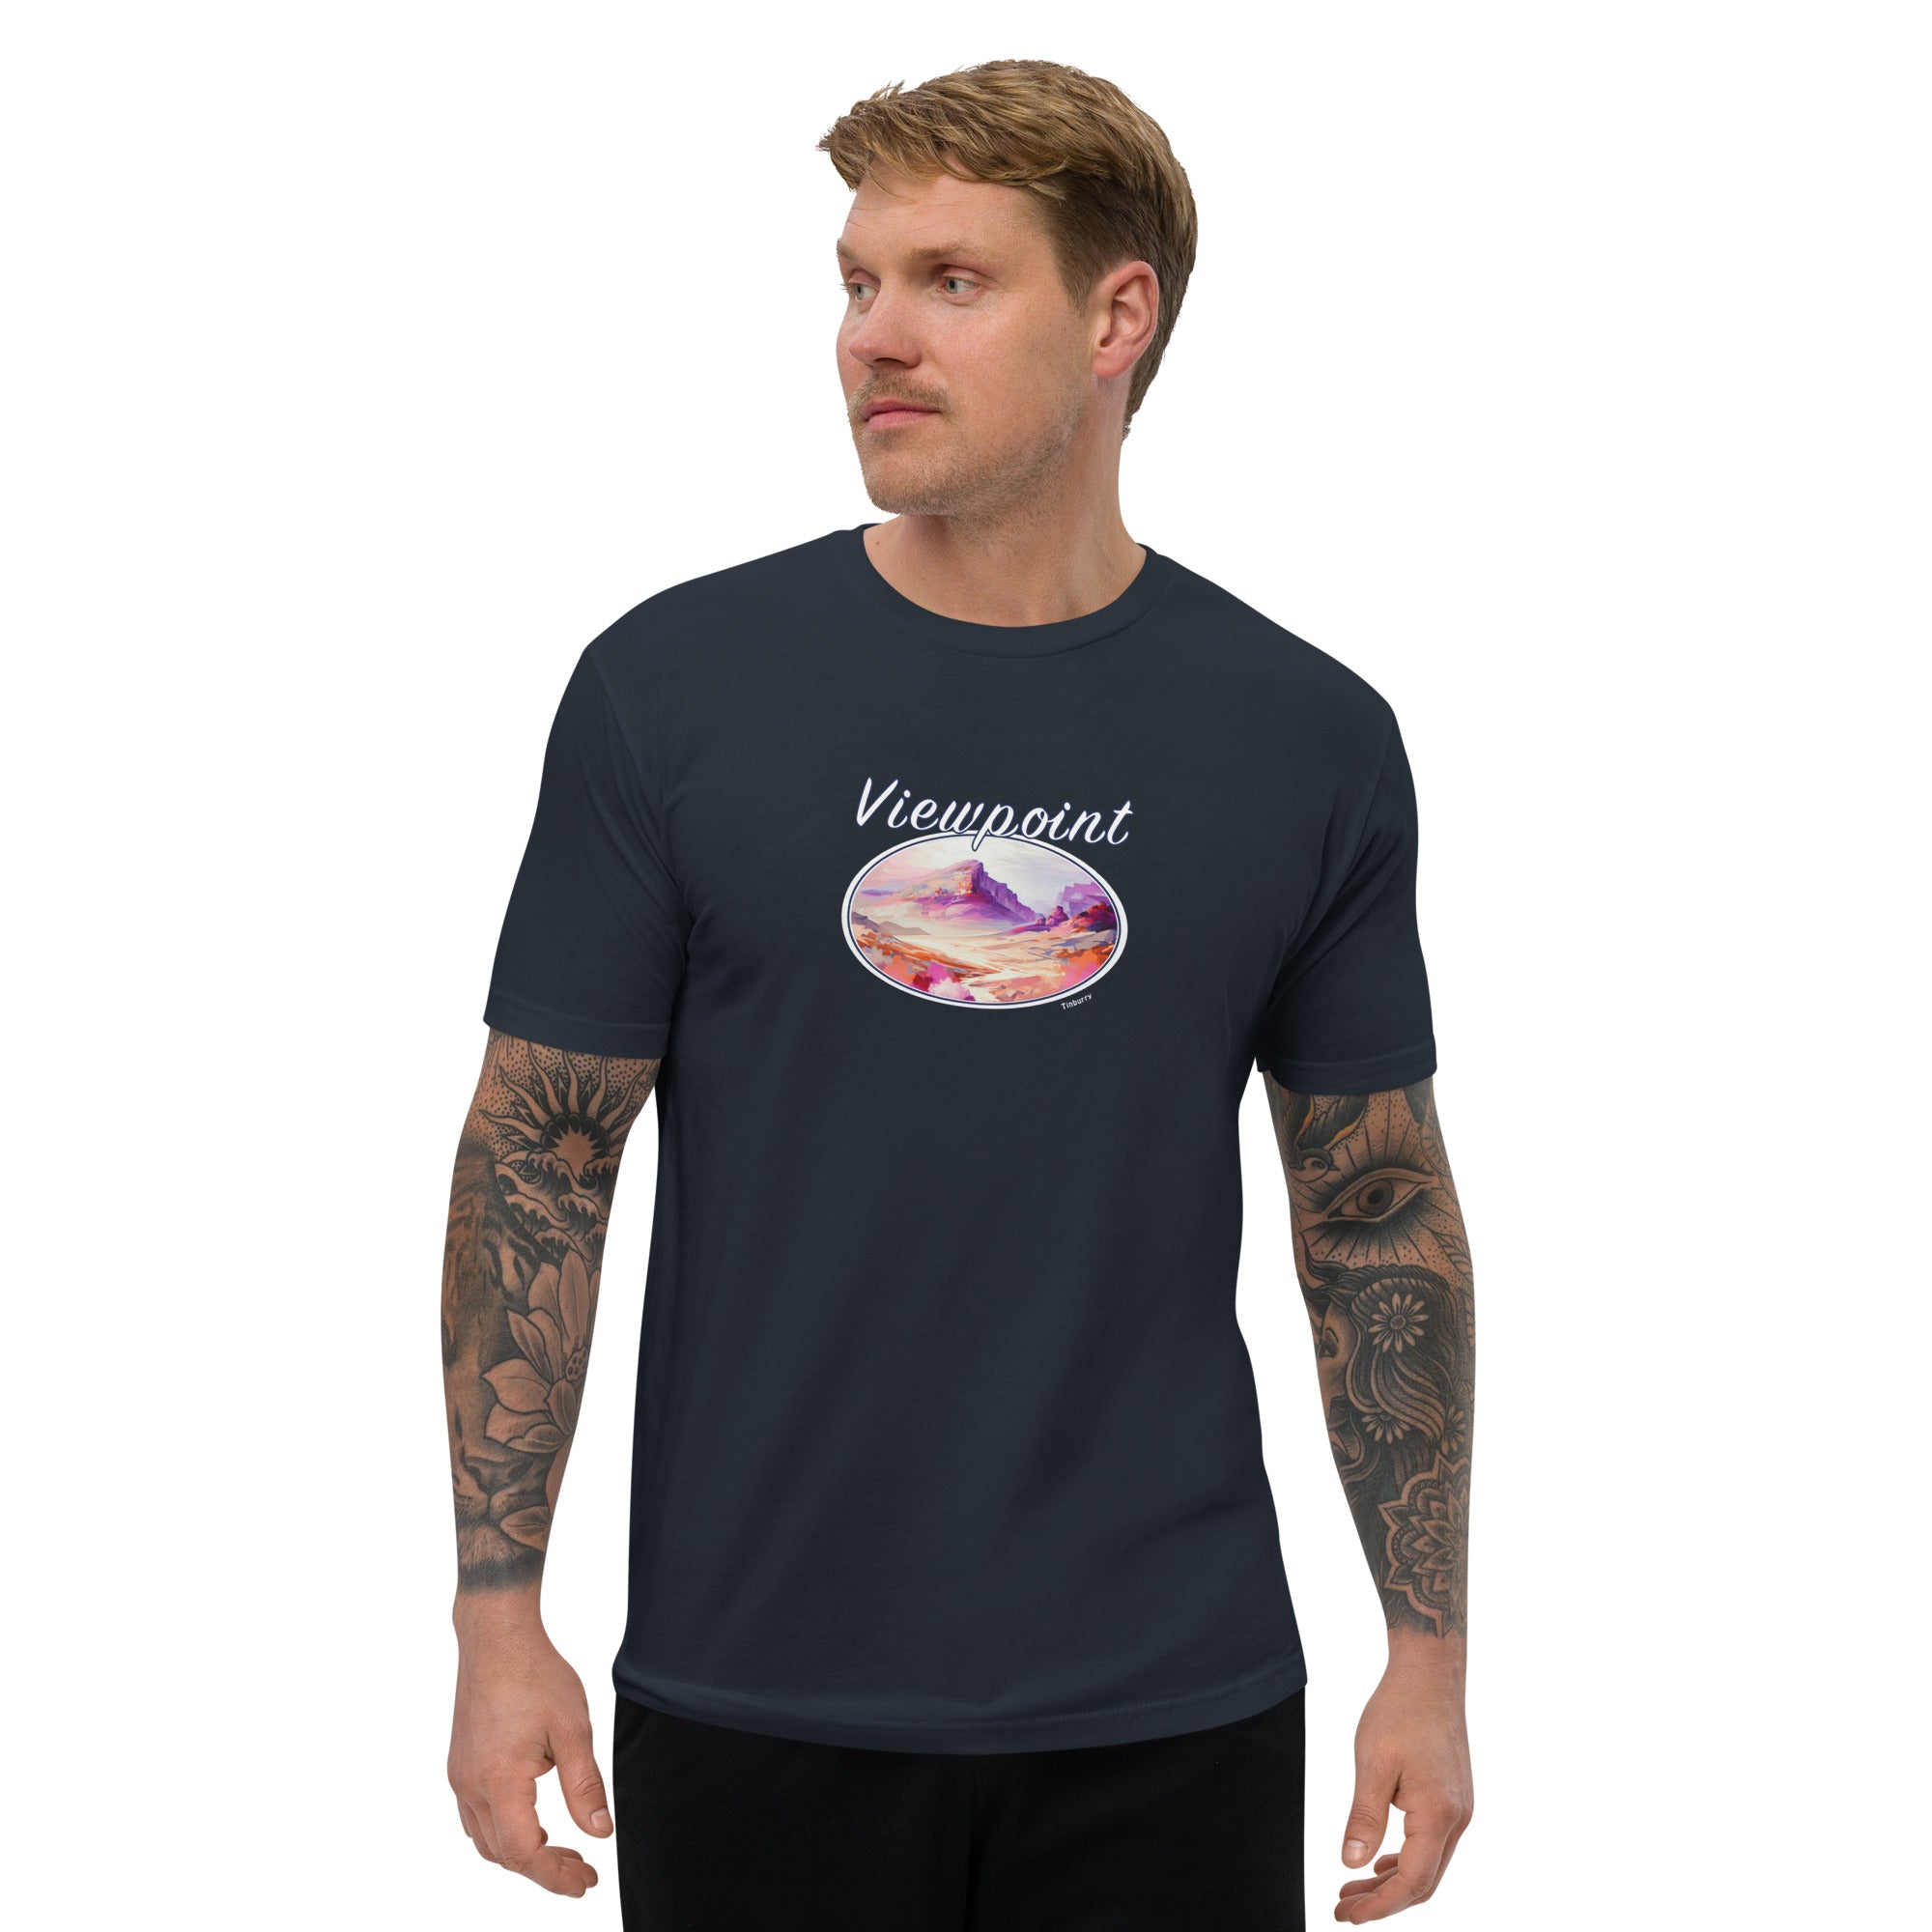 Viewpoint Men's T-Shirt